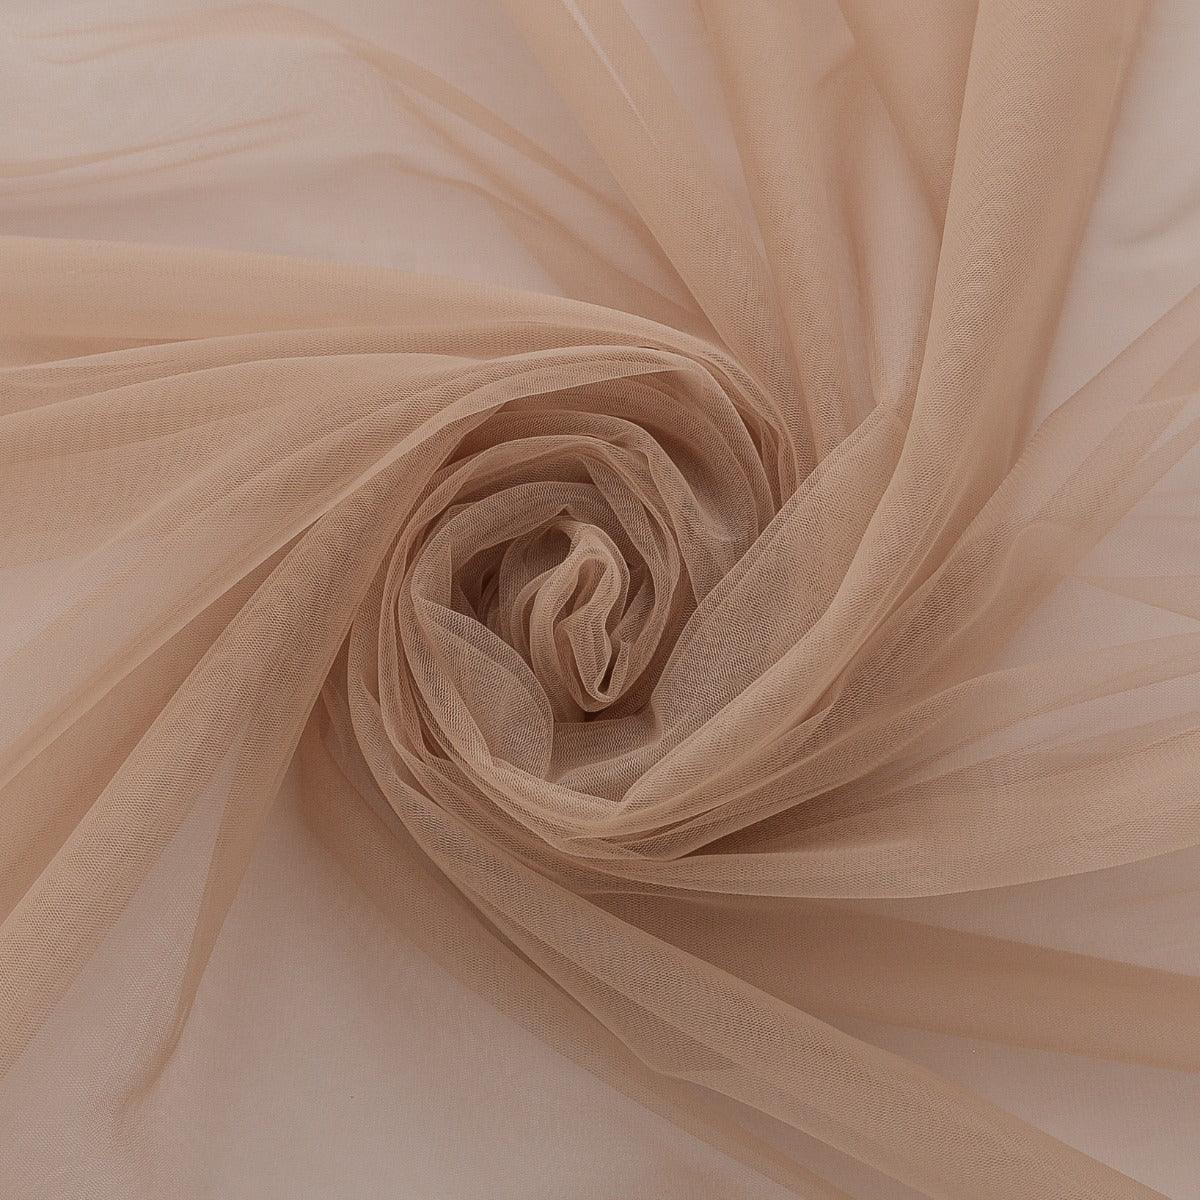 Tulle - Nude folosit pentru a fabrica rochii ocazie